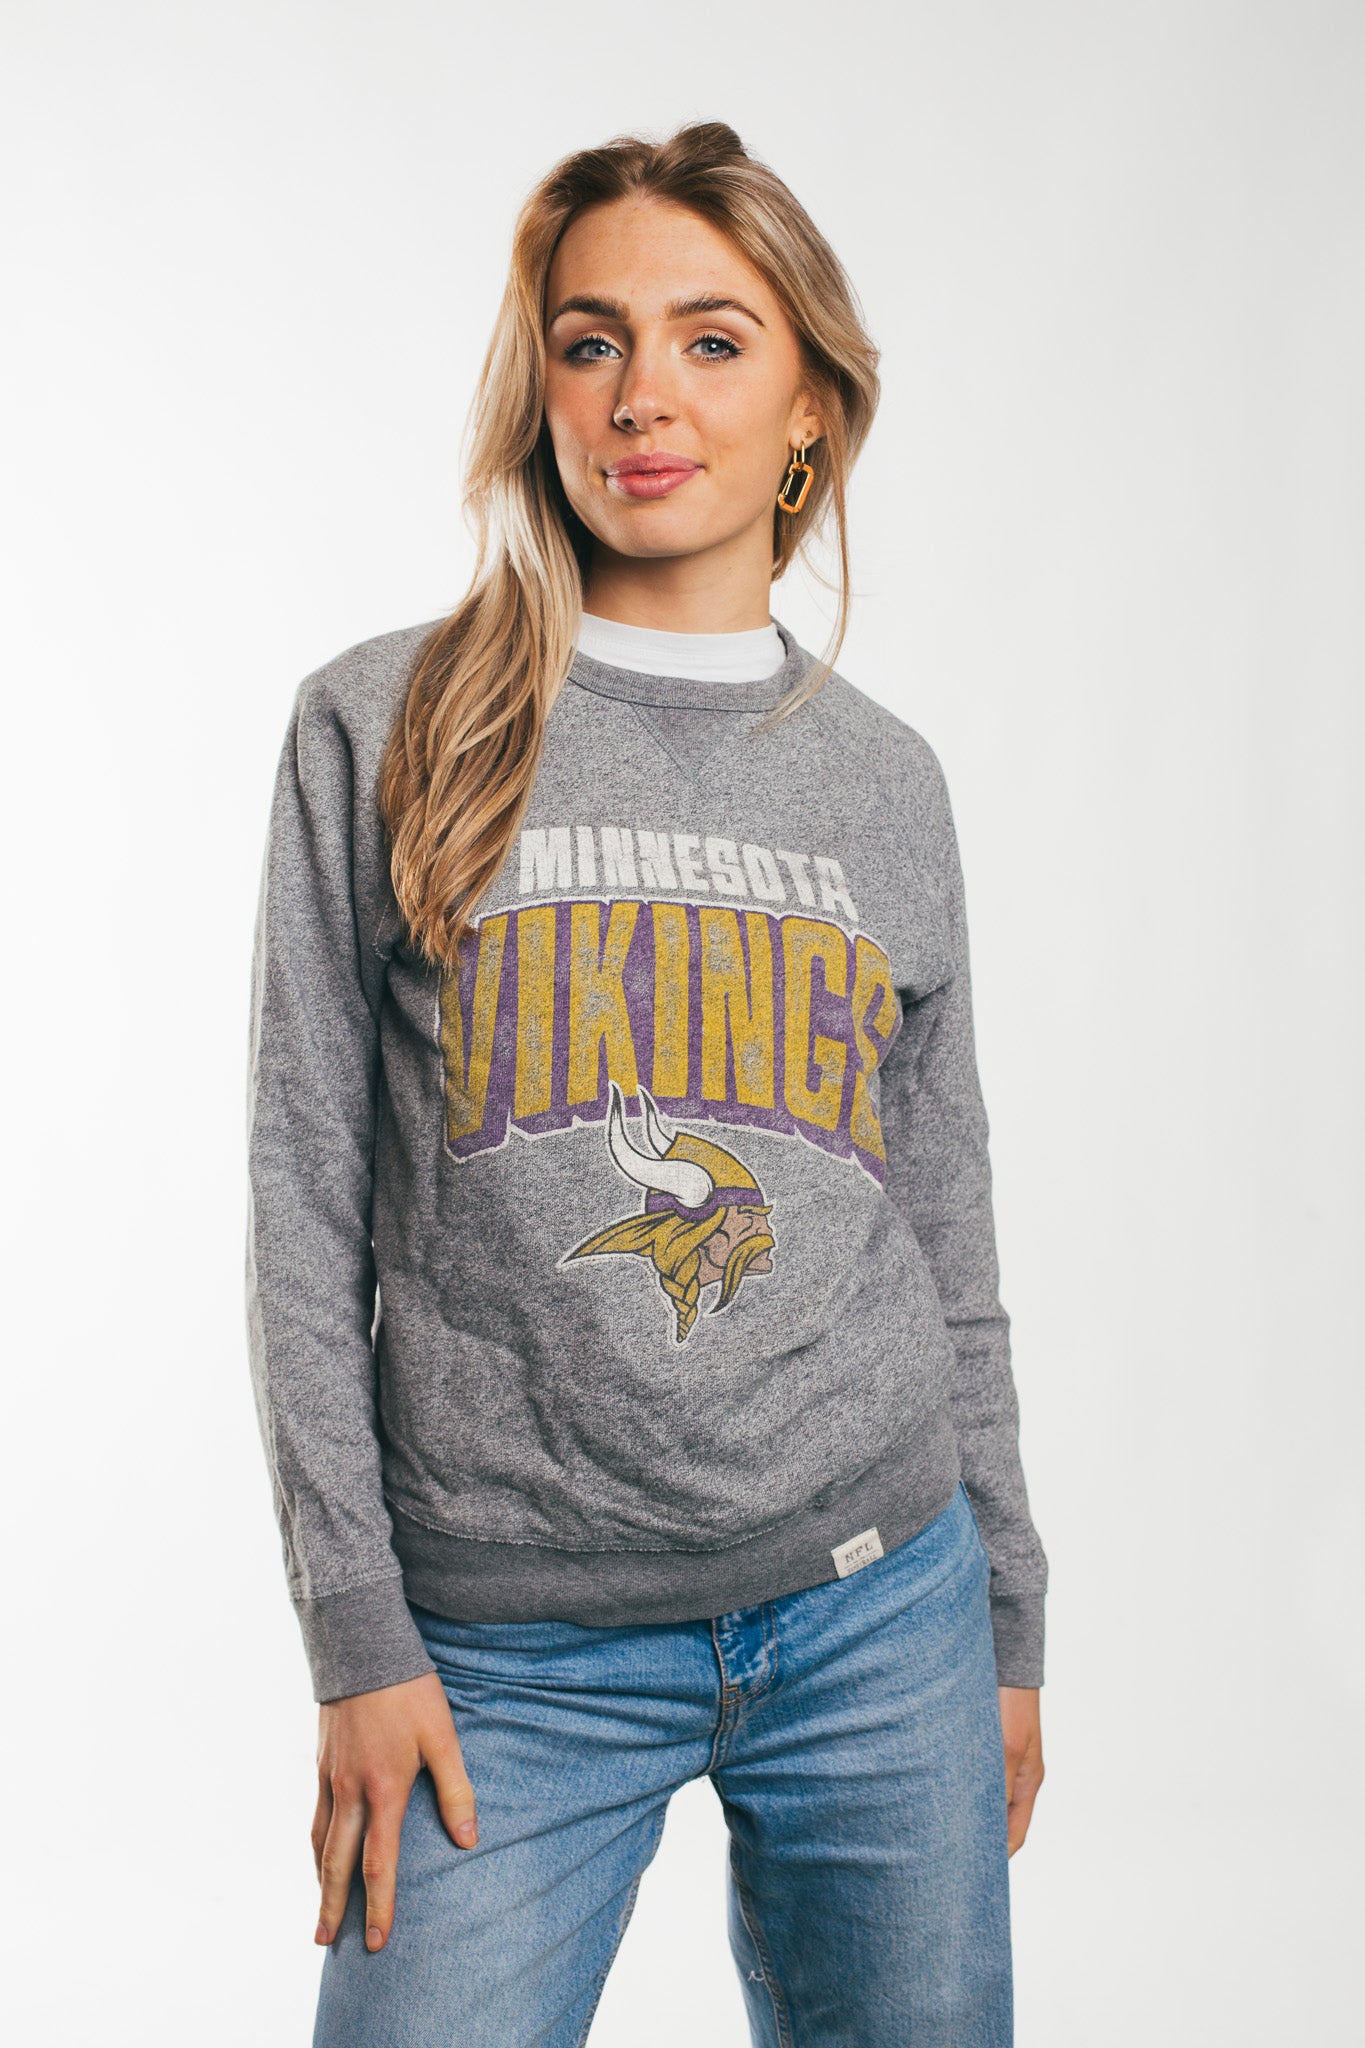 Minnesota Vikings - Sweatshirt (S)